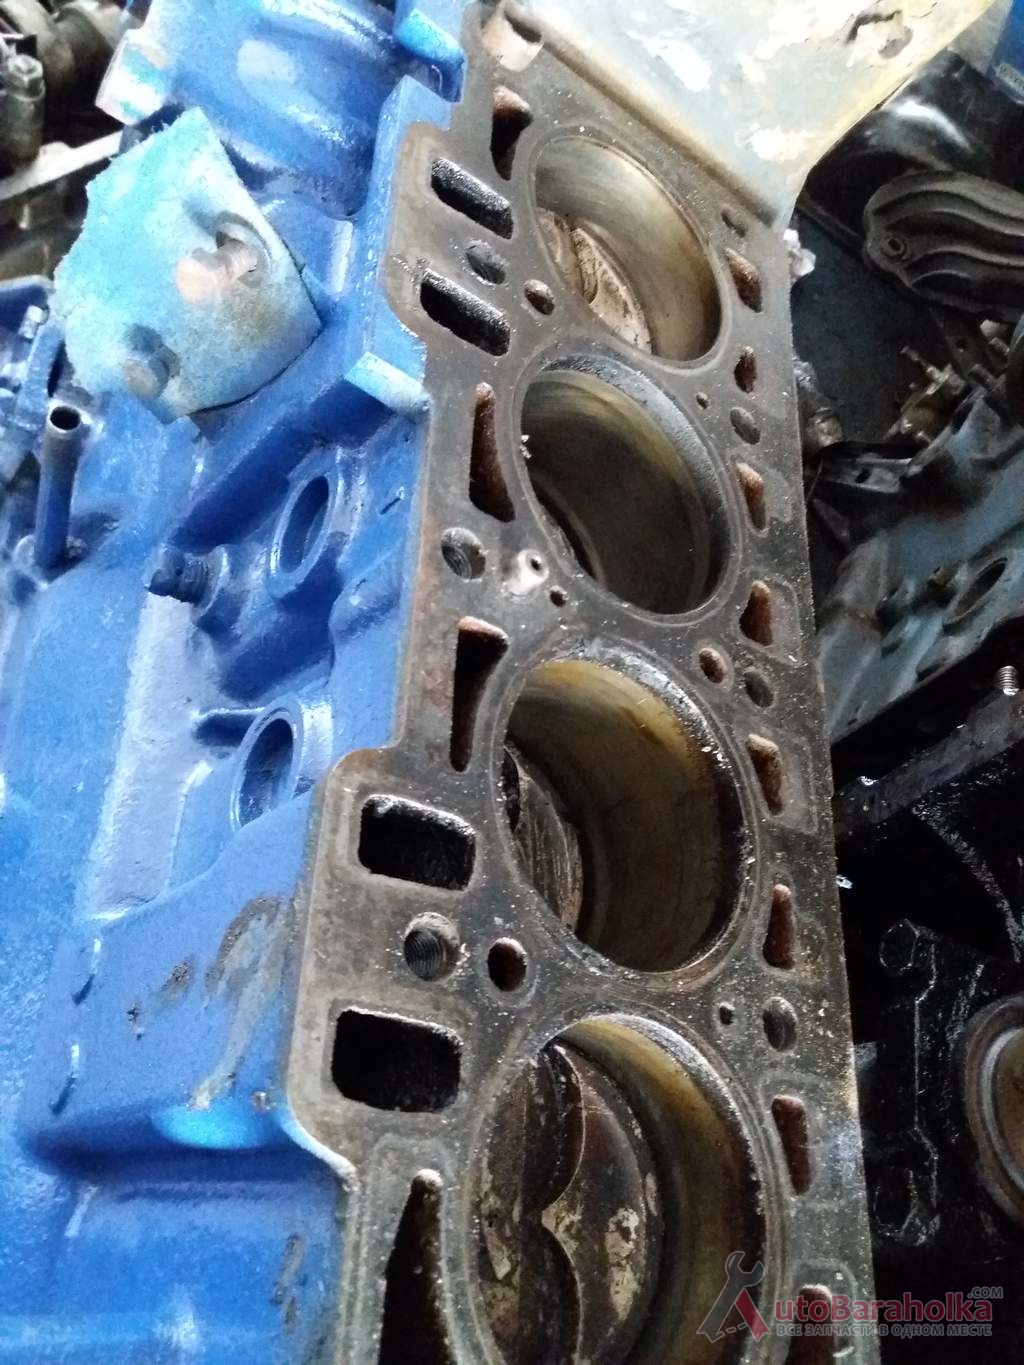 Продам Двигатель ЗАЗ Таврия Славута с экспортных машин, оригинальные детали, проверенный. Гарантия 3 месяца Херсон